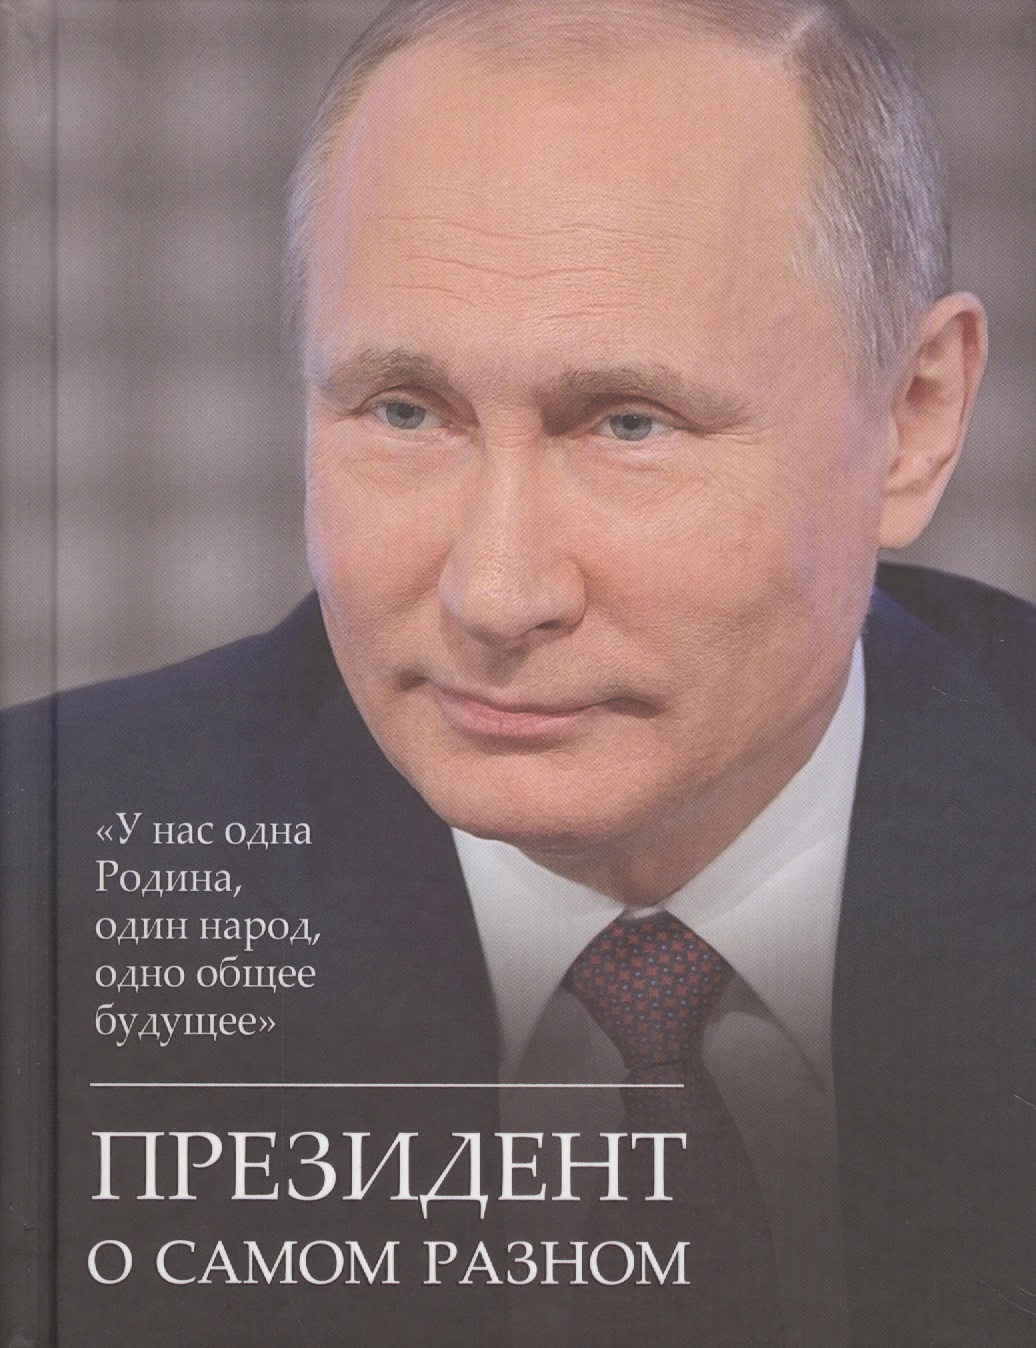 путин в в мысли о россии президент о самом важном Путин Владимир Владимирович Президент о самом разном